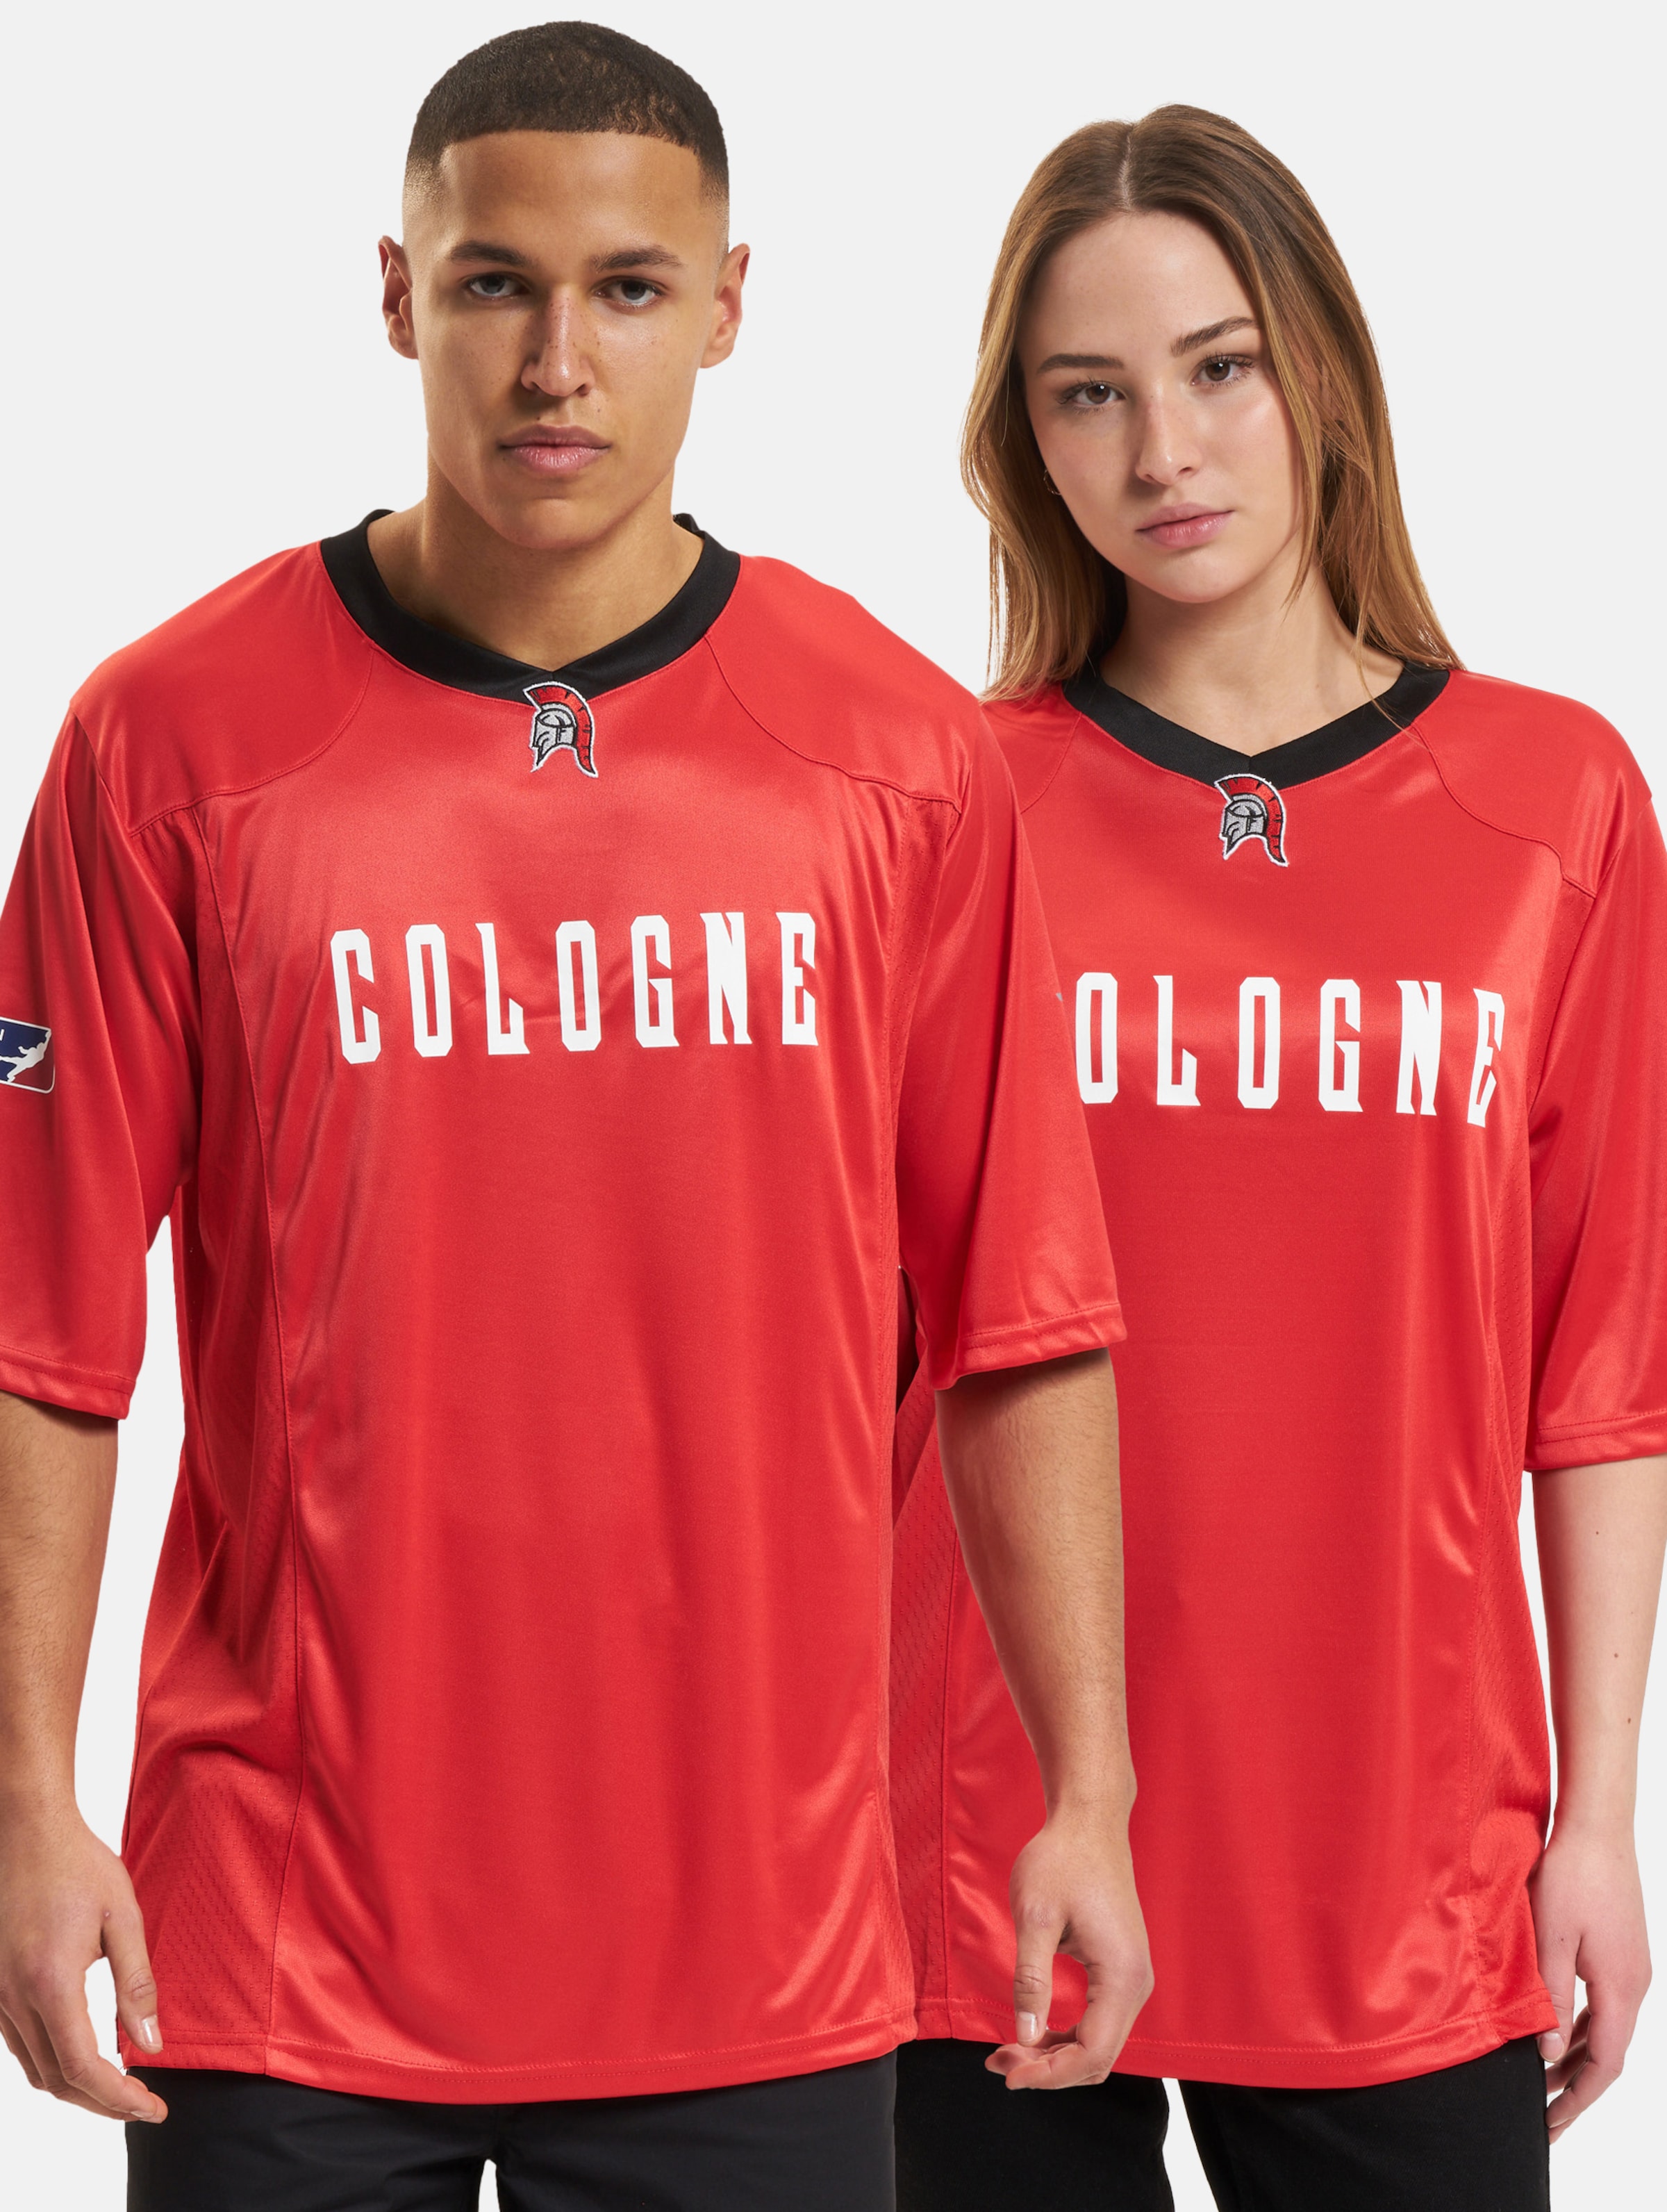 European League Of Football Cologne Centurions Authentic Game Jersey Frauen,Männer,Unisex op kleur rood, Maat XXL